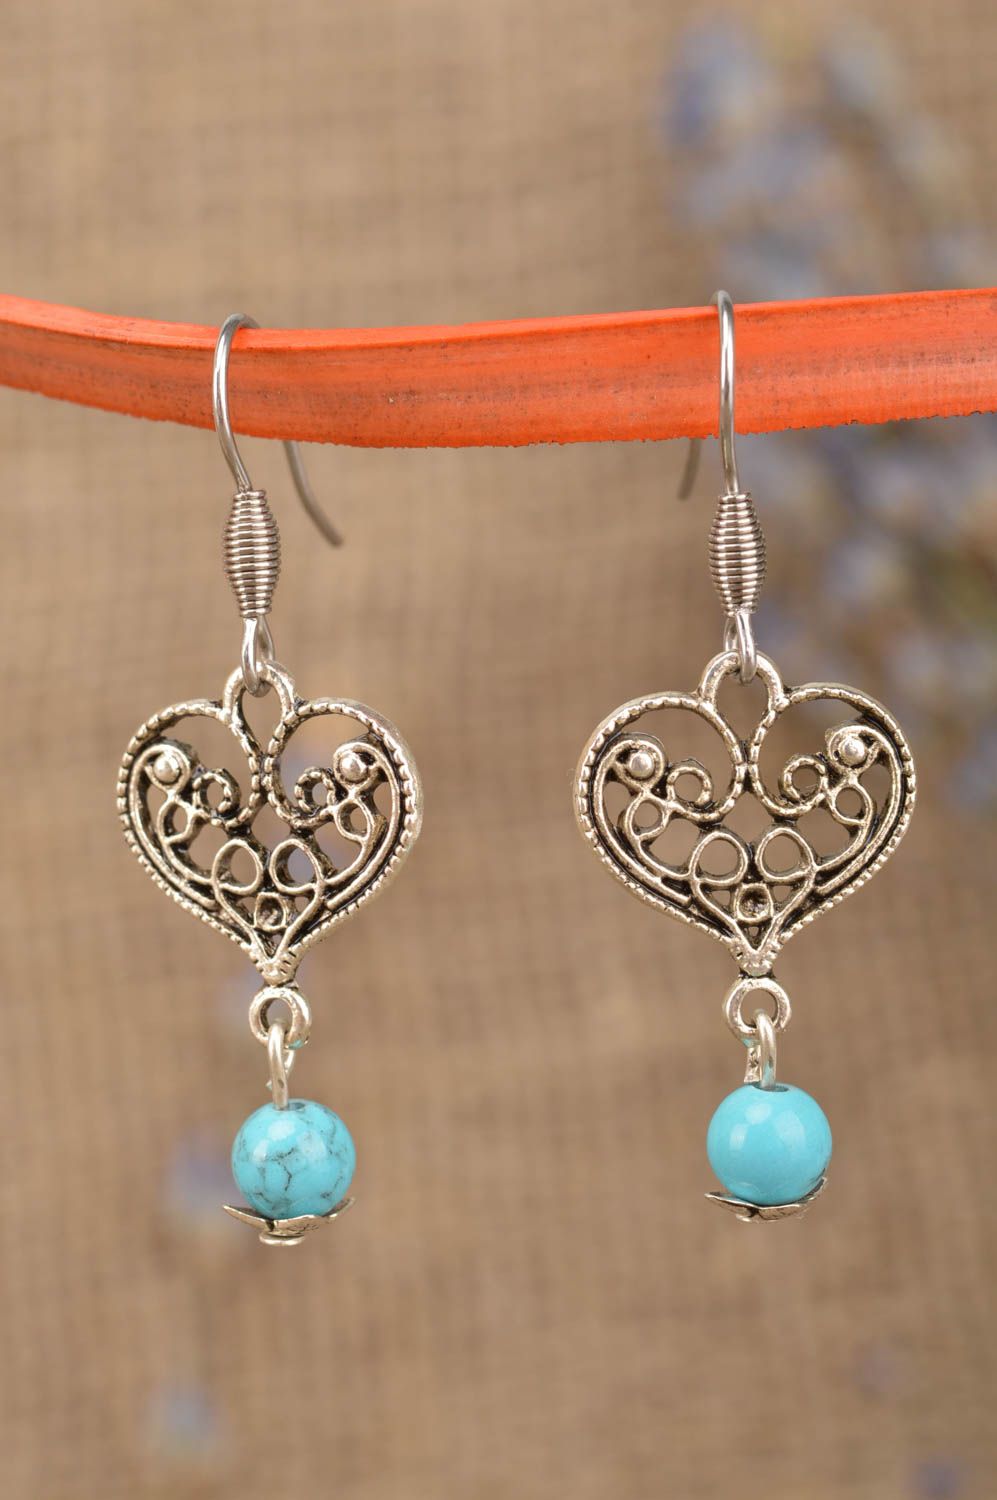 Оригинальные металлические серьги с подвесками в виде сердца и голубыми бусинами фото 1